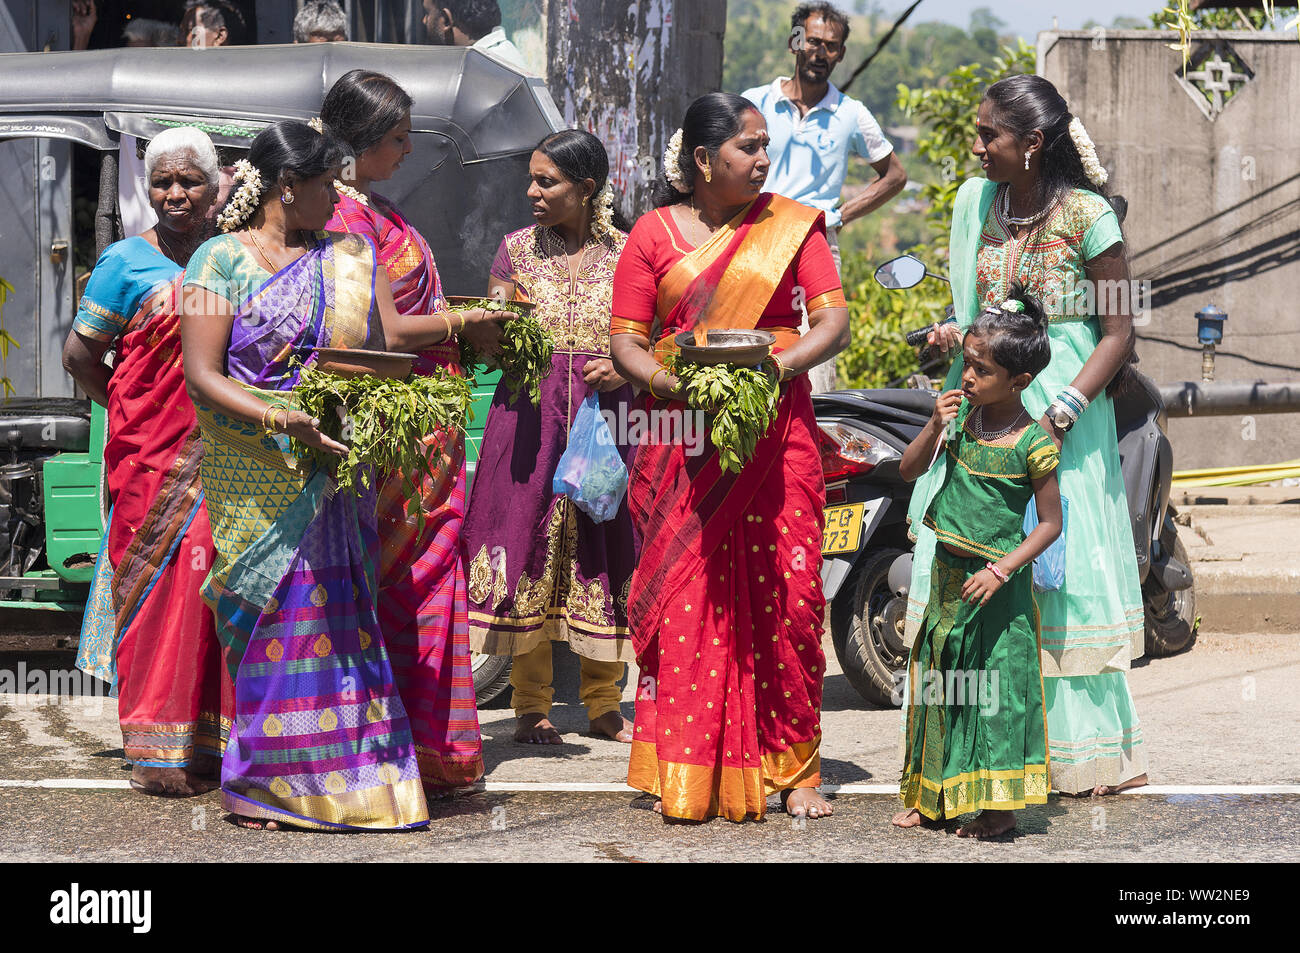 Pusellawa, Sri Lanka, 12. März 2019:: Hindu Festival der Thaipusam - Body Piercing Rituale unter dem Blut Mond. Devotees Opfergaben von Essen. Stockfoto